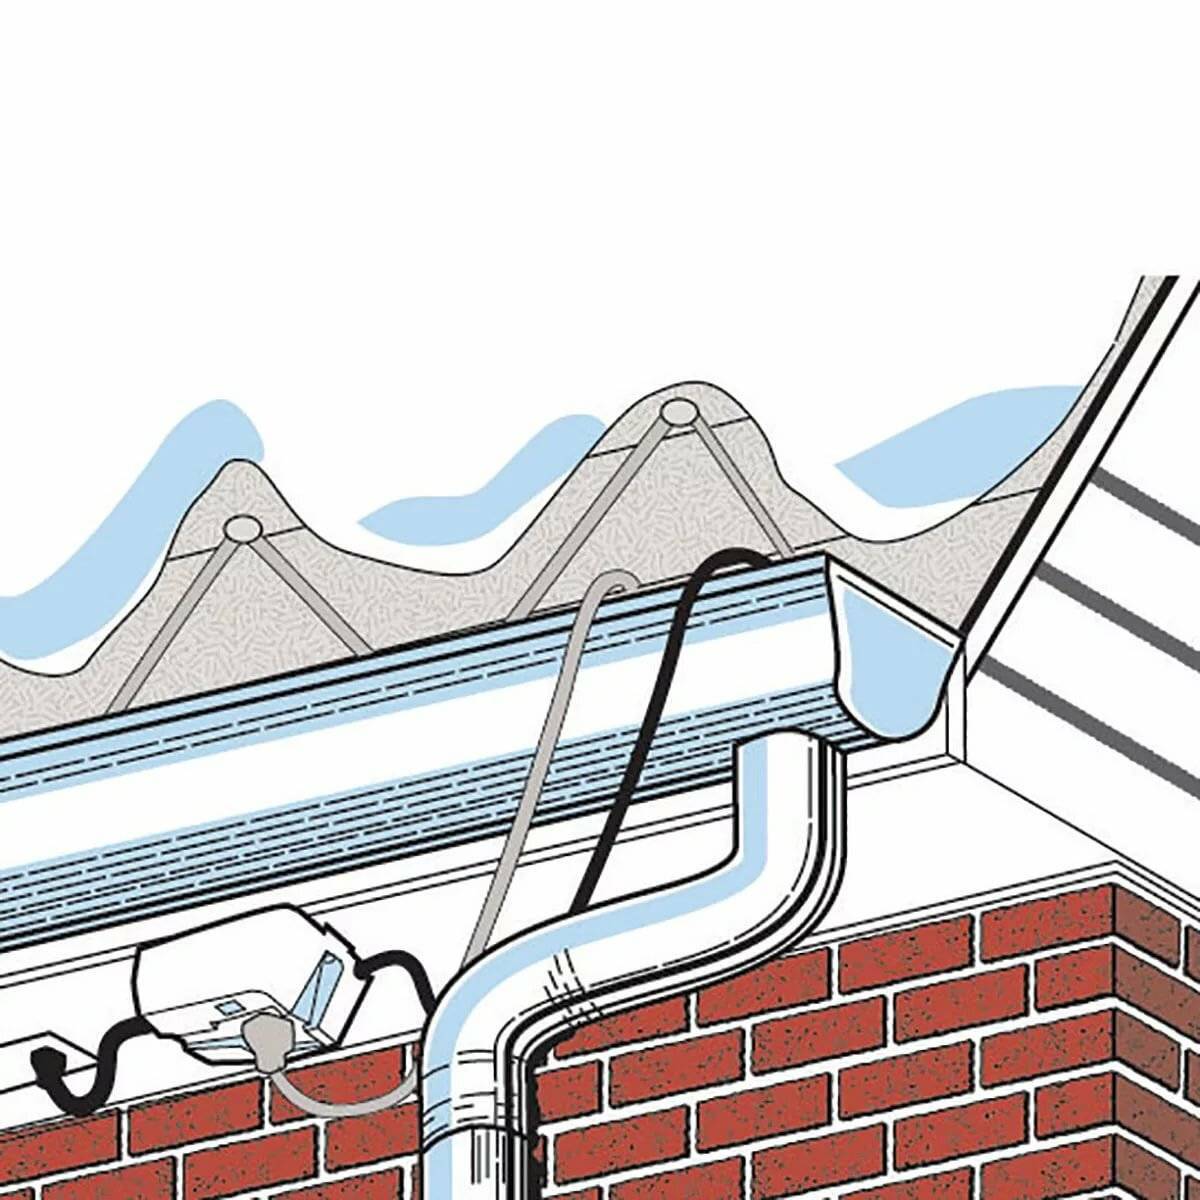 Обогрев водосточных труб и желобов саморегулирующим кабелем: растопить лед с помощью греющего провода